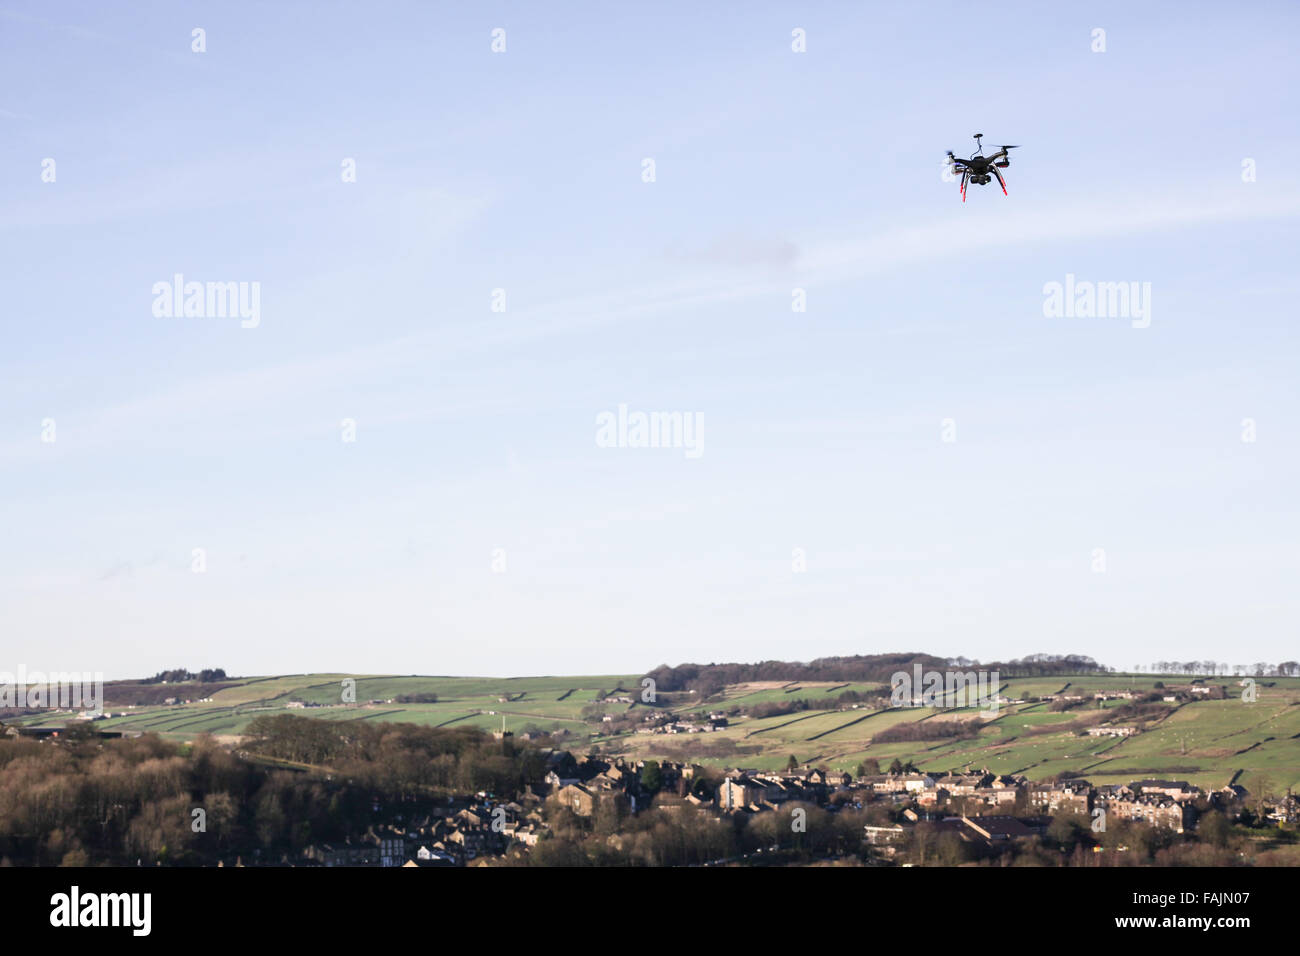 3DR Robotics UAV solo prodotti di consumo, drone piattaforma riprese con telecamere gopro controllata dal telefono cellulare o dal tablet schermo Foto Stock